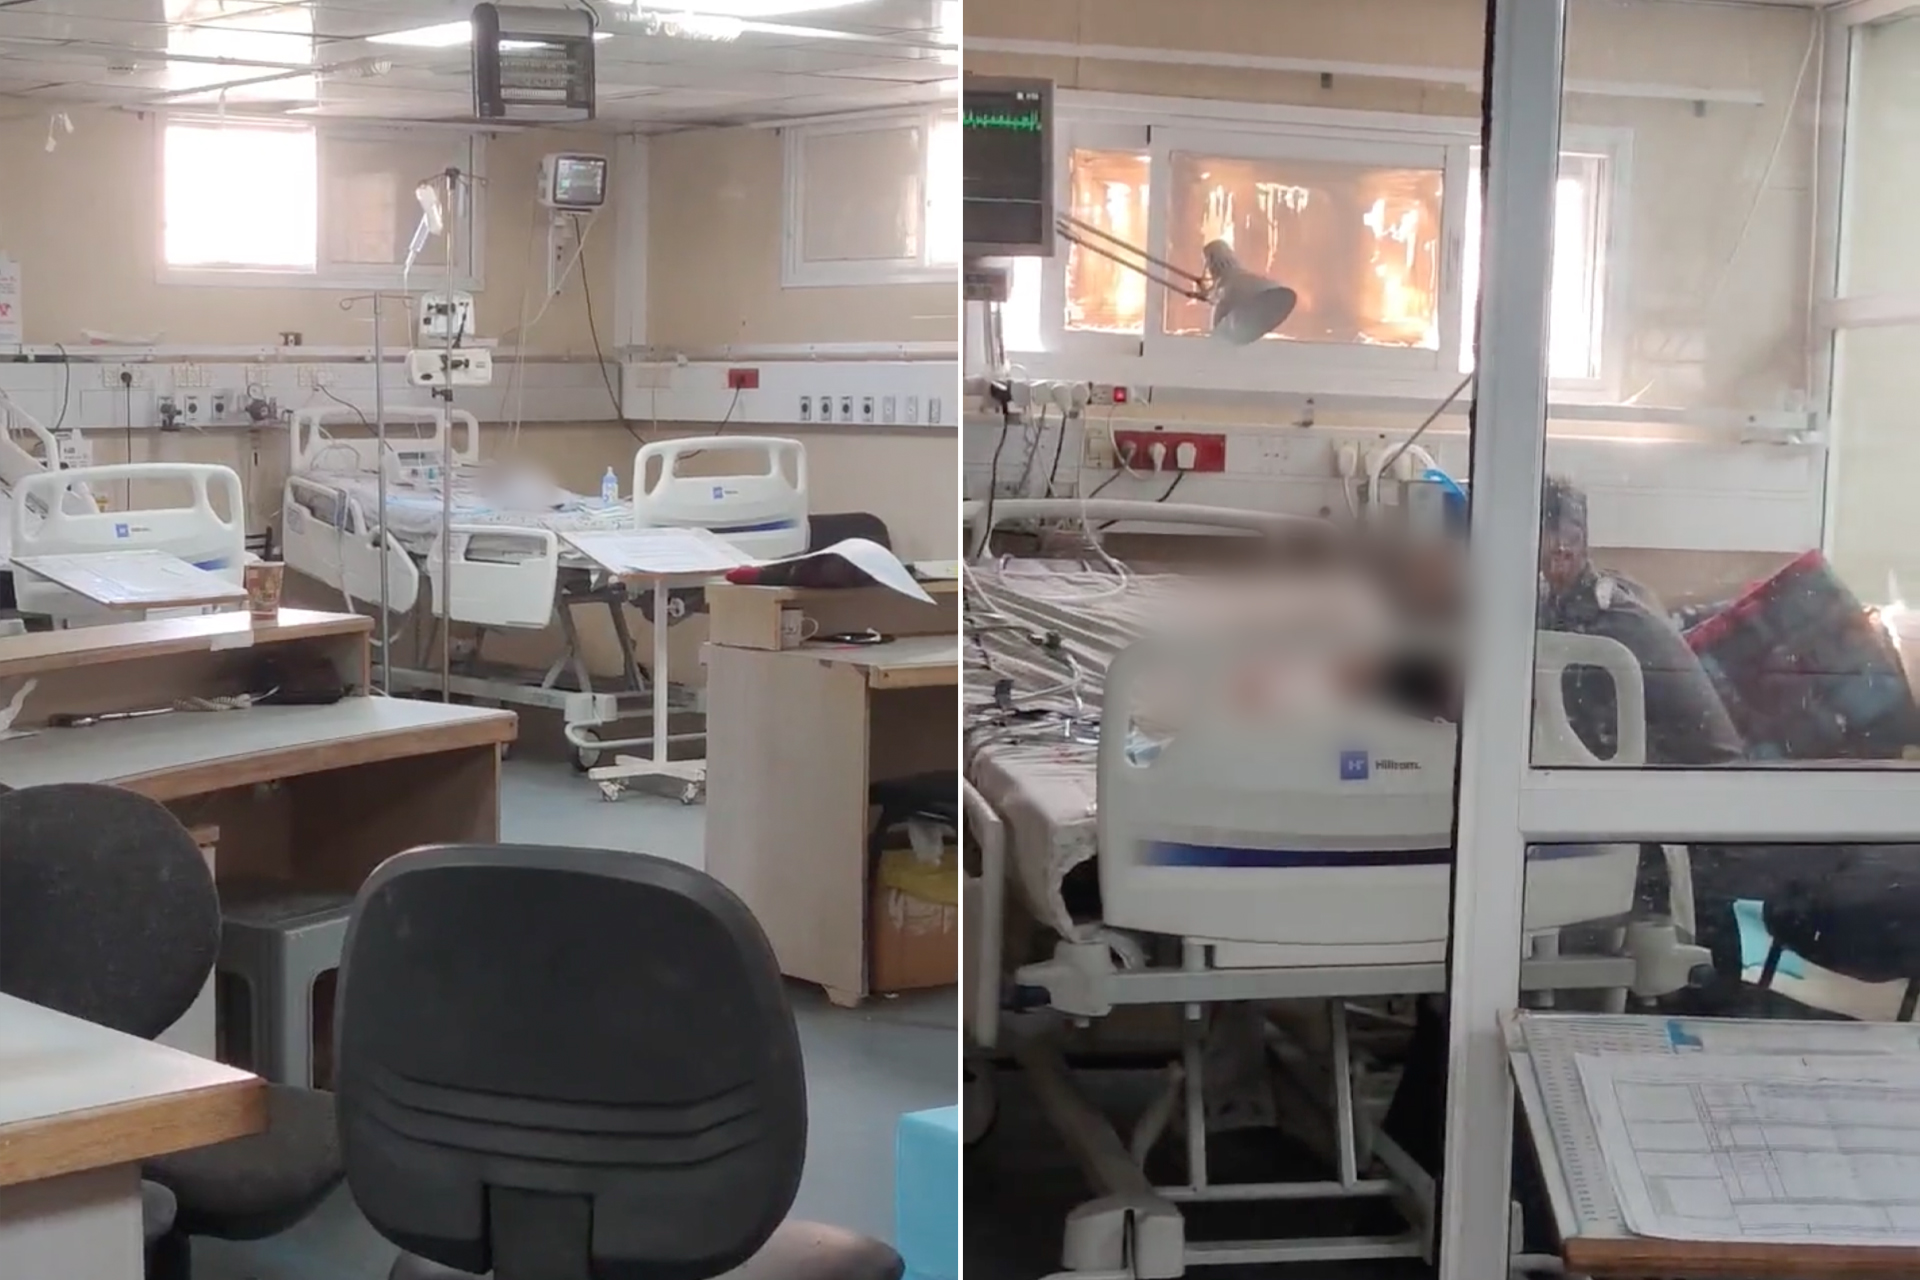 جثث أطفال رضع متحللة بمستشفى في غزة تصدم العالم | أخبار – البوكس نيوز